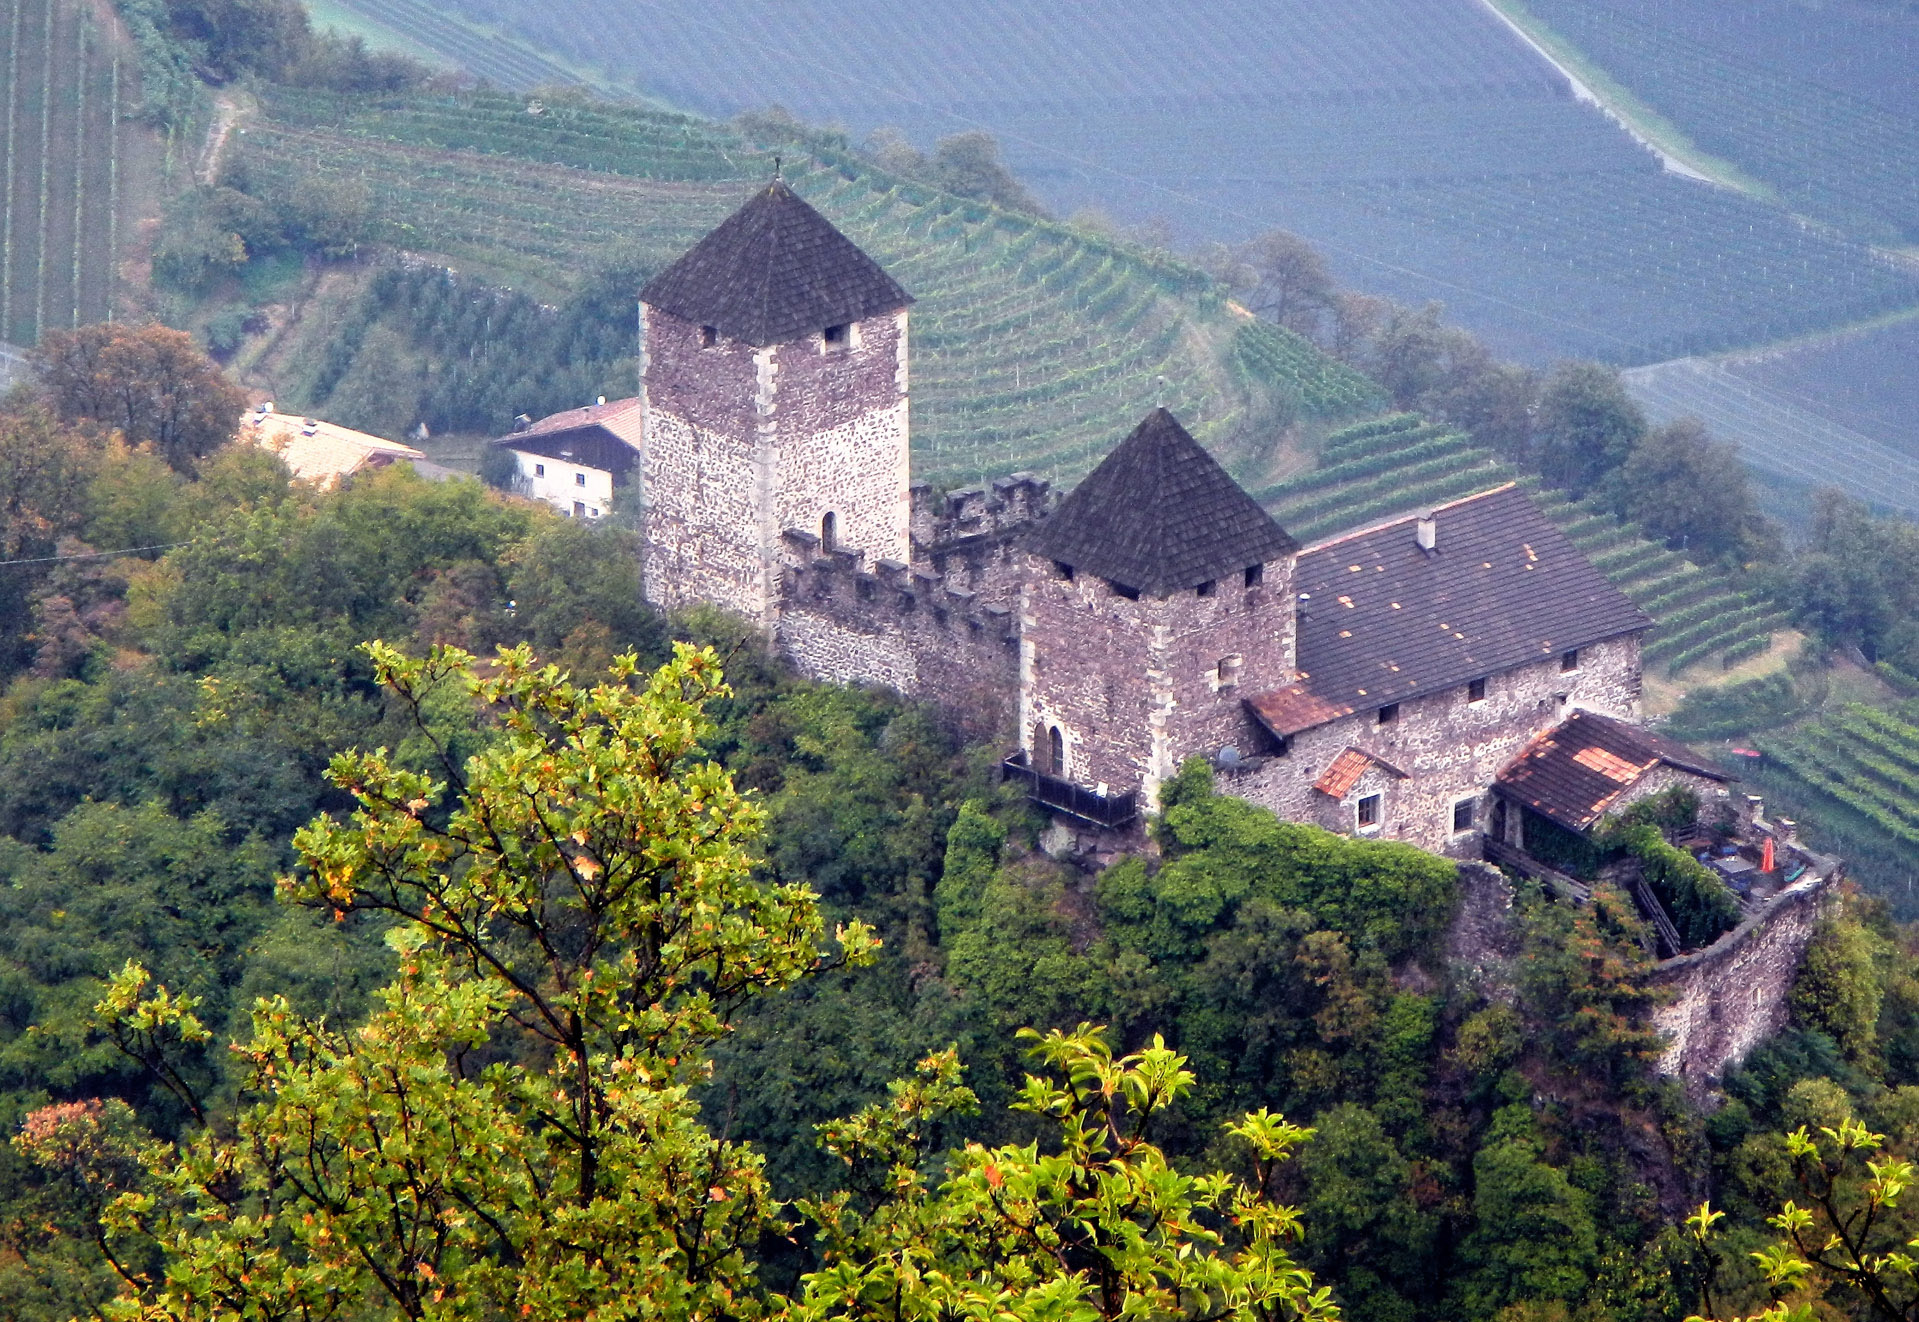 Unter St. Hippolyt die Leonburg. Schloss Leonburg bei Lana stammt aus der Zeit um Ende des 11., Anfang des 12. Jahrhunderts. Die Leonburg bietet einen Blick direkt in die mittelalterliche Architektur der Wehrburgen. Zwei dreigeschossige Bergfriede stehen in der Anlage und zeugen so von der wehrhaften Zweckm�gkeit der Burg.